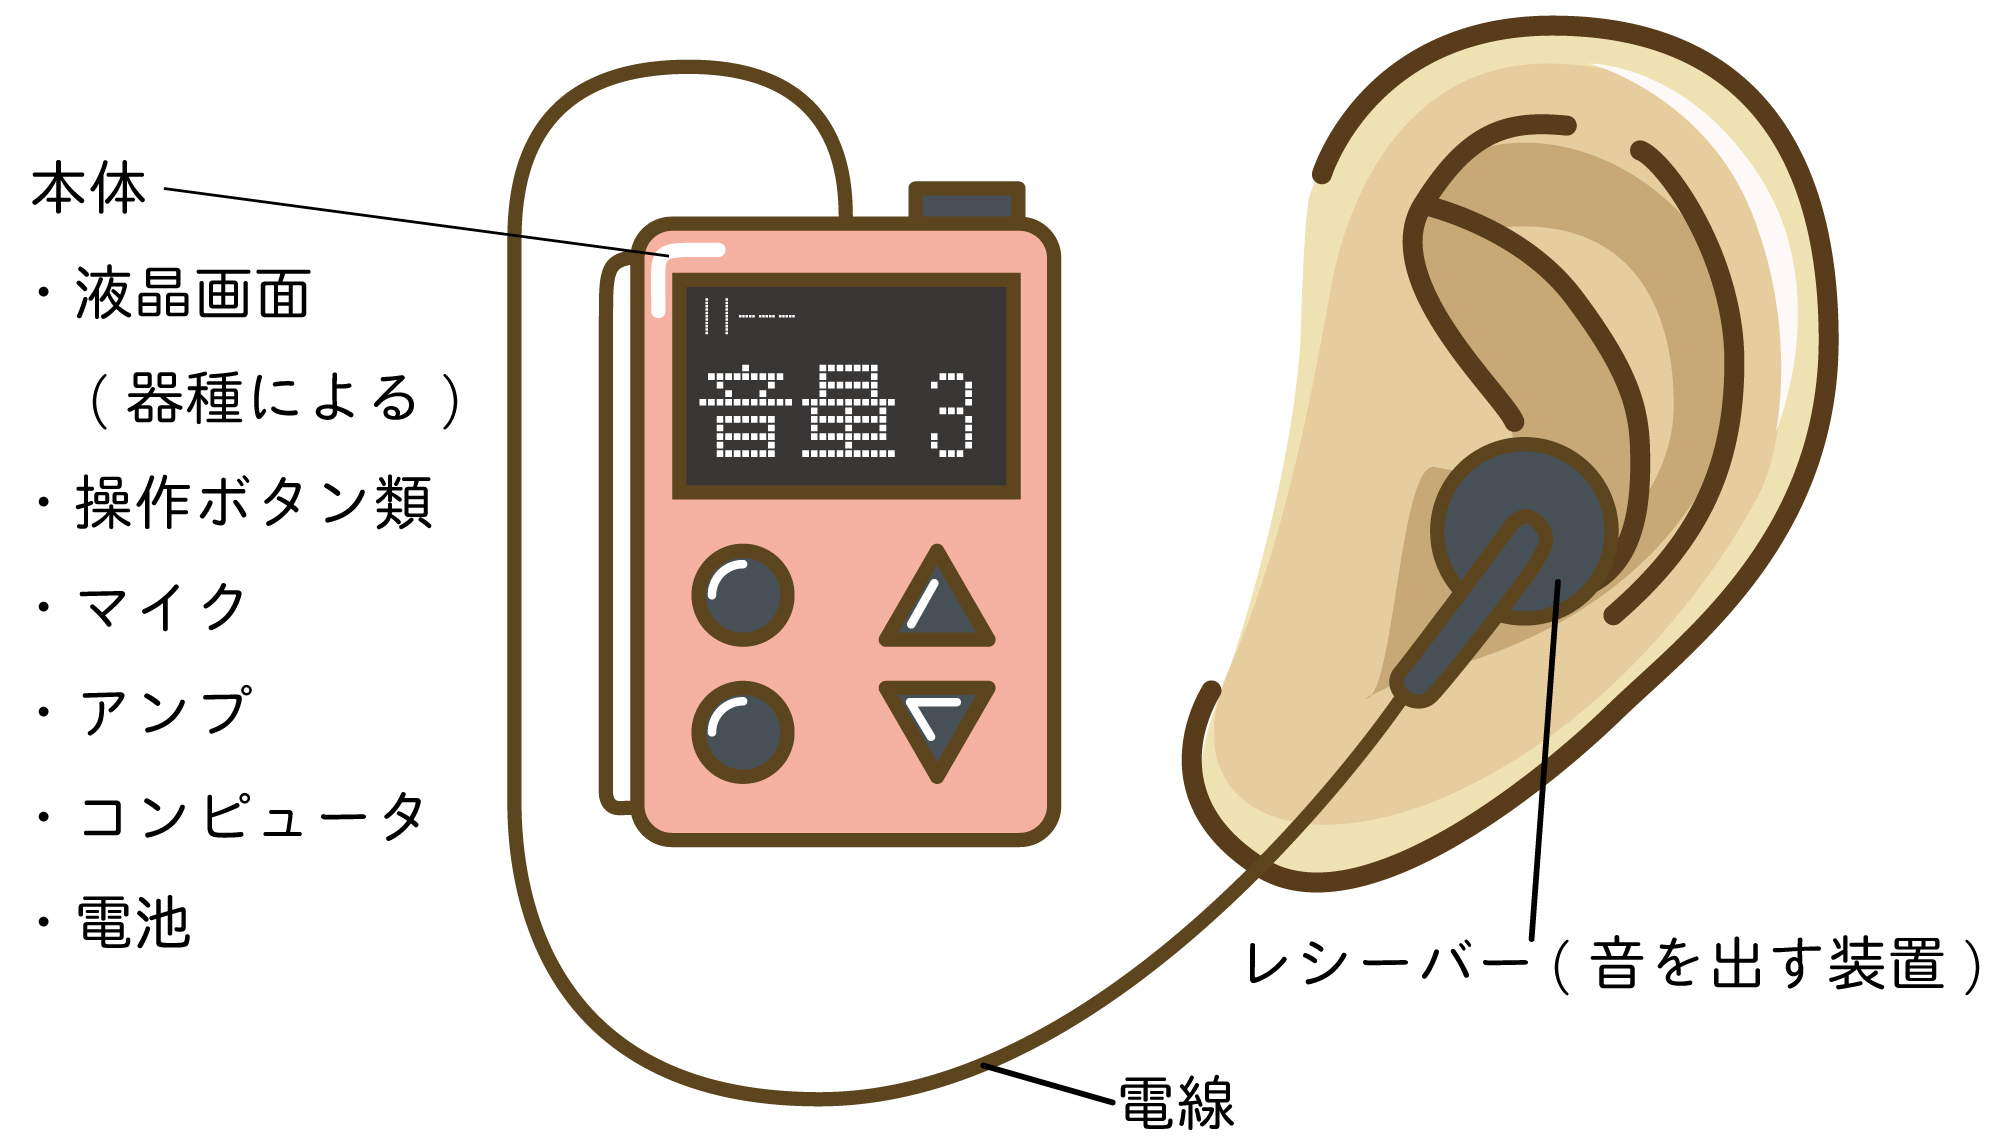 補聴器 と 集 音 器 の 違い は